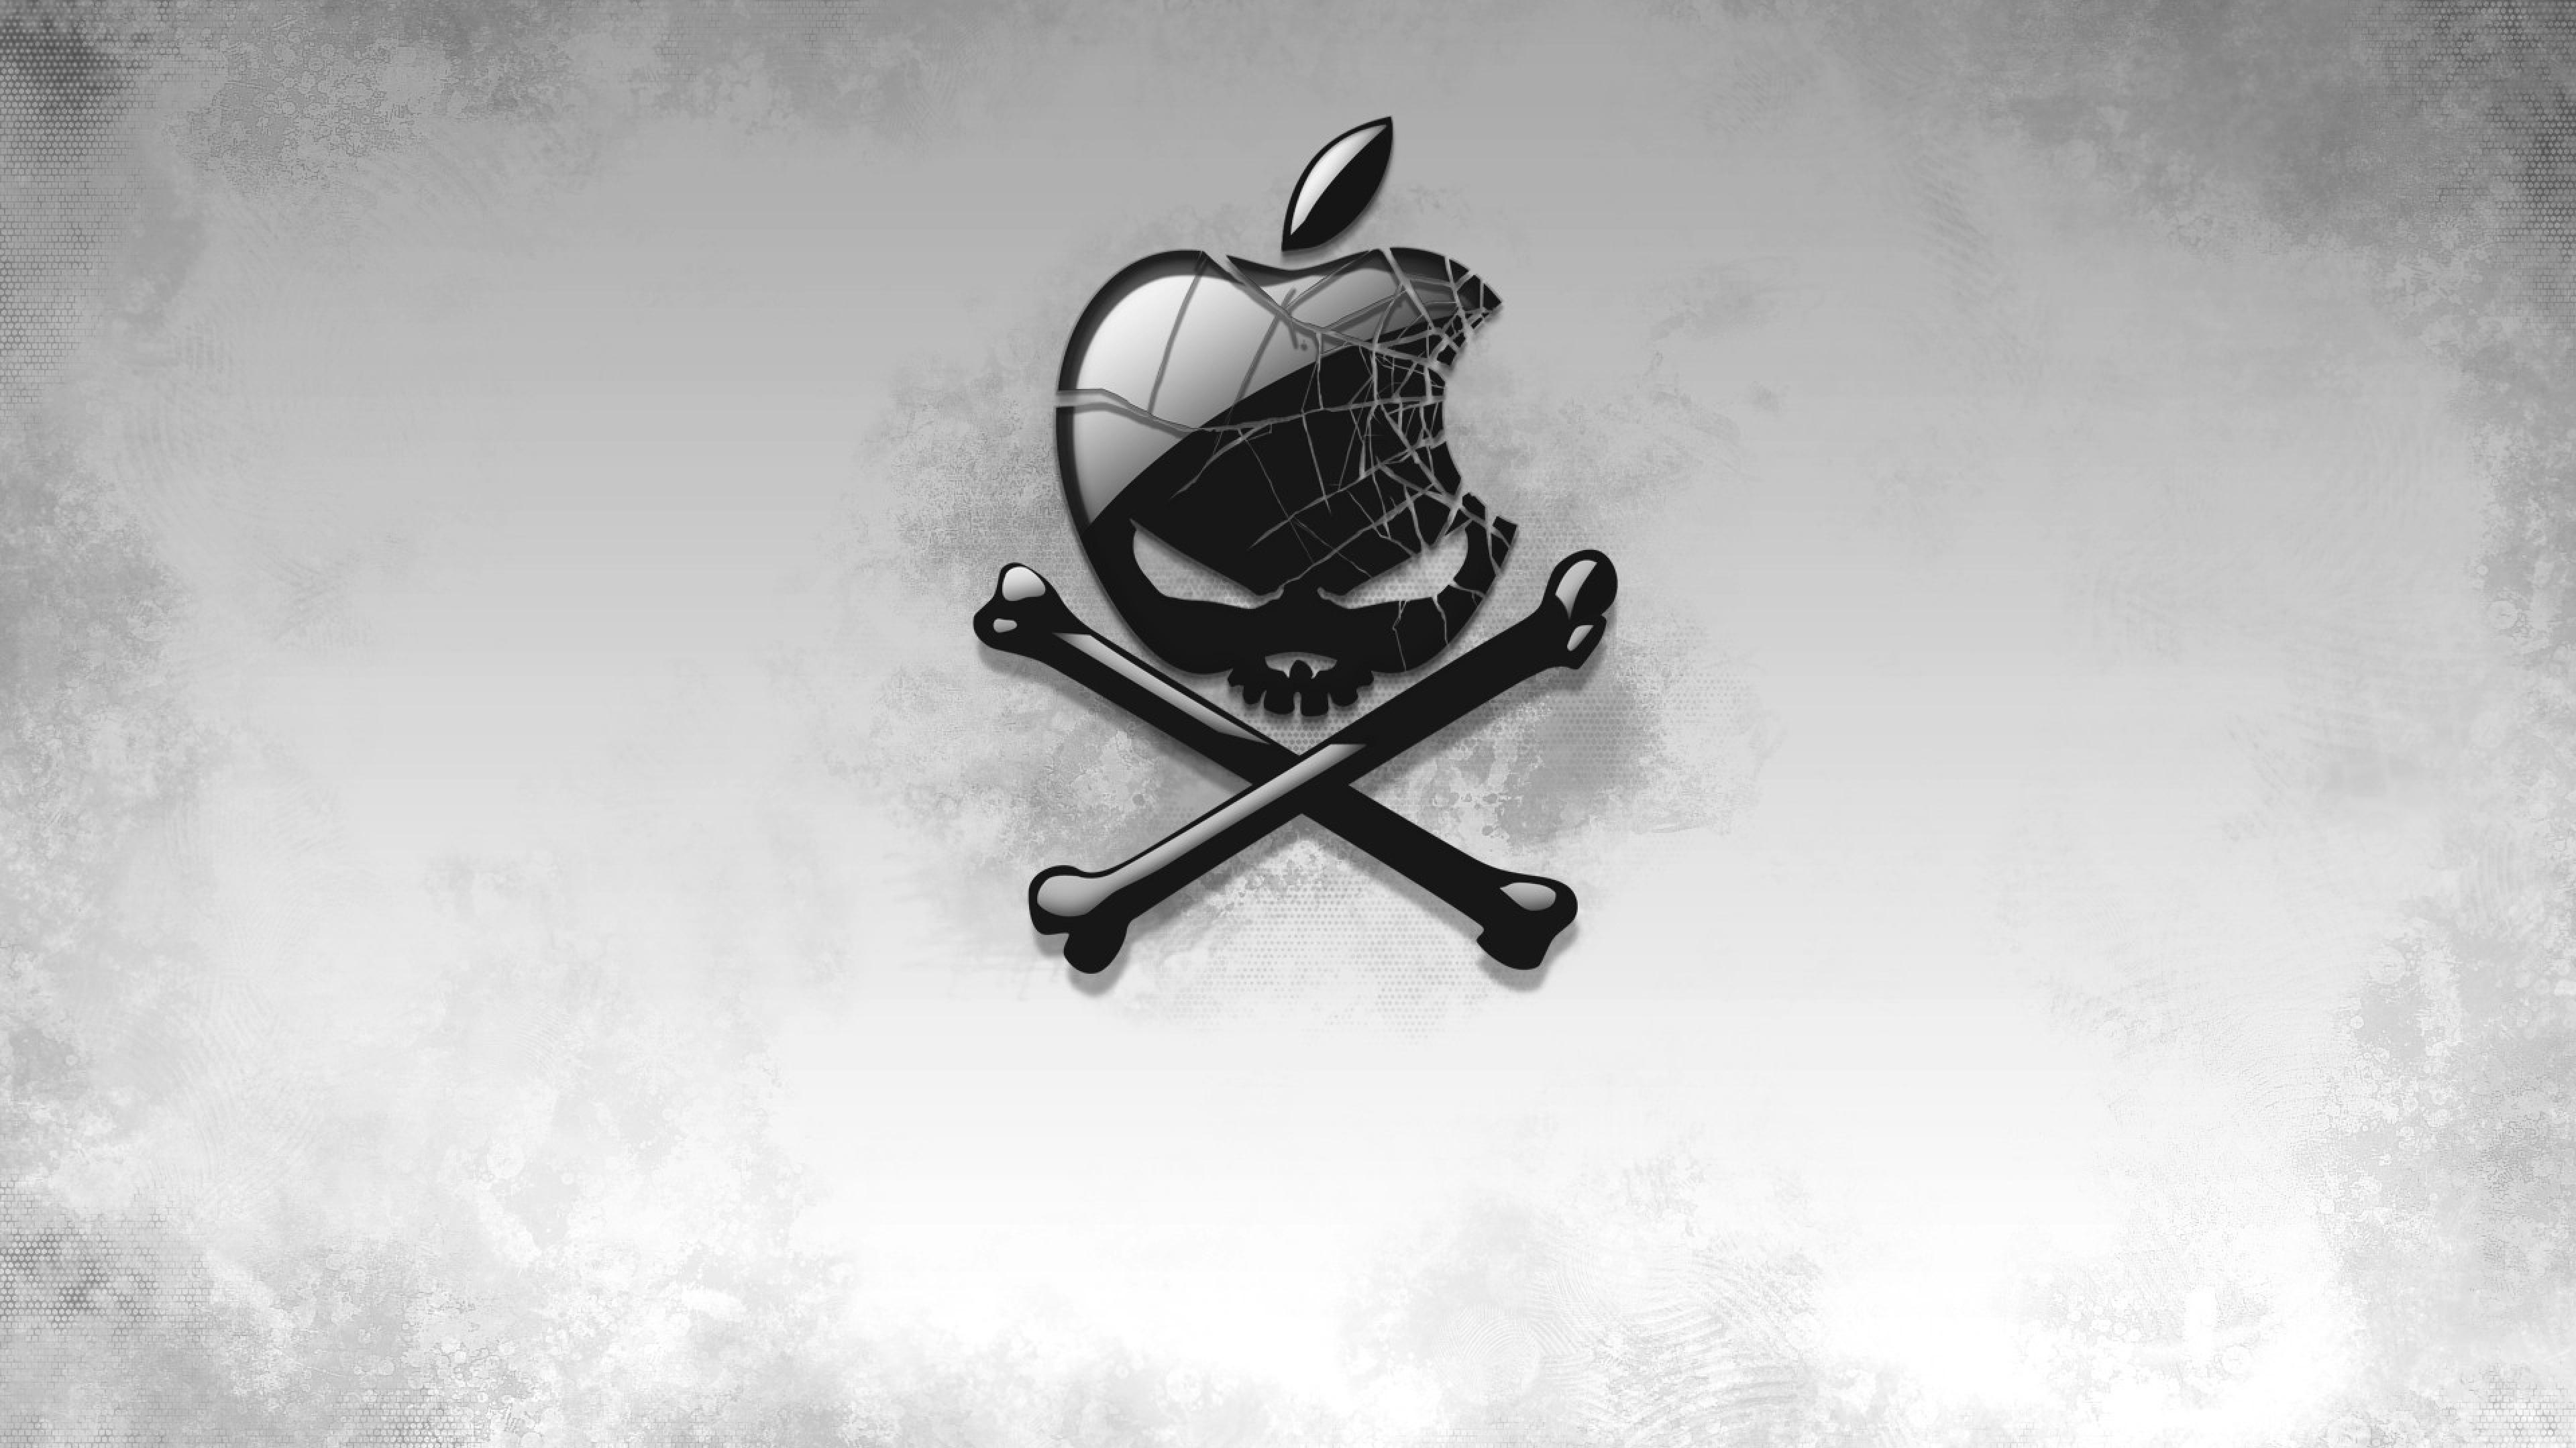 Black Apple Skull HD Artist 4k Wallpaper Image Background